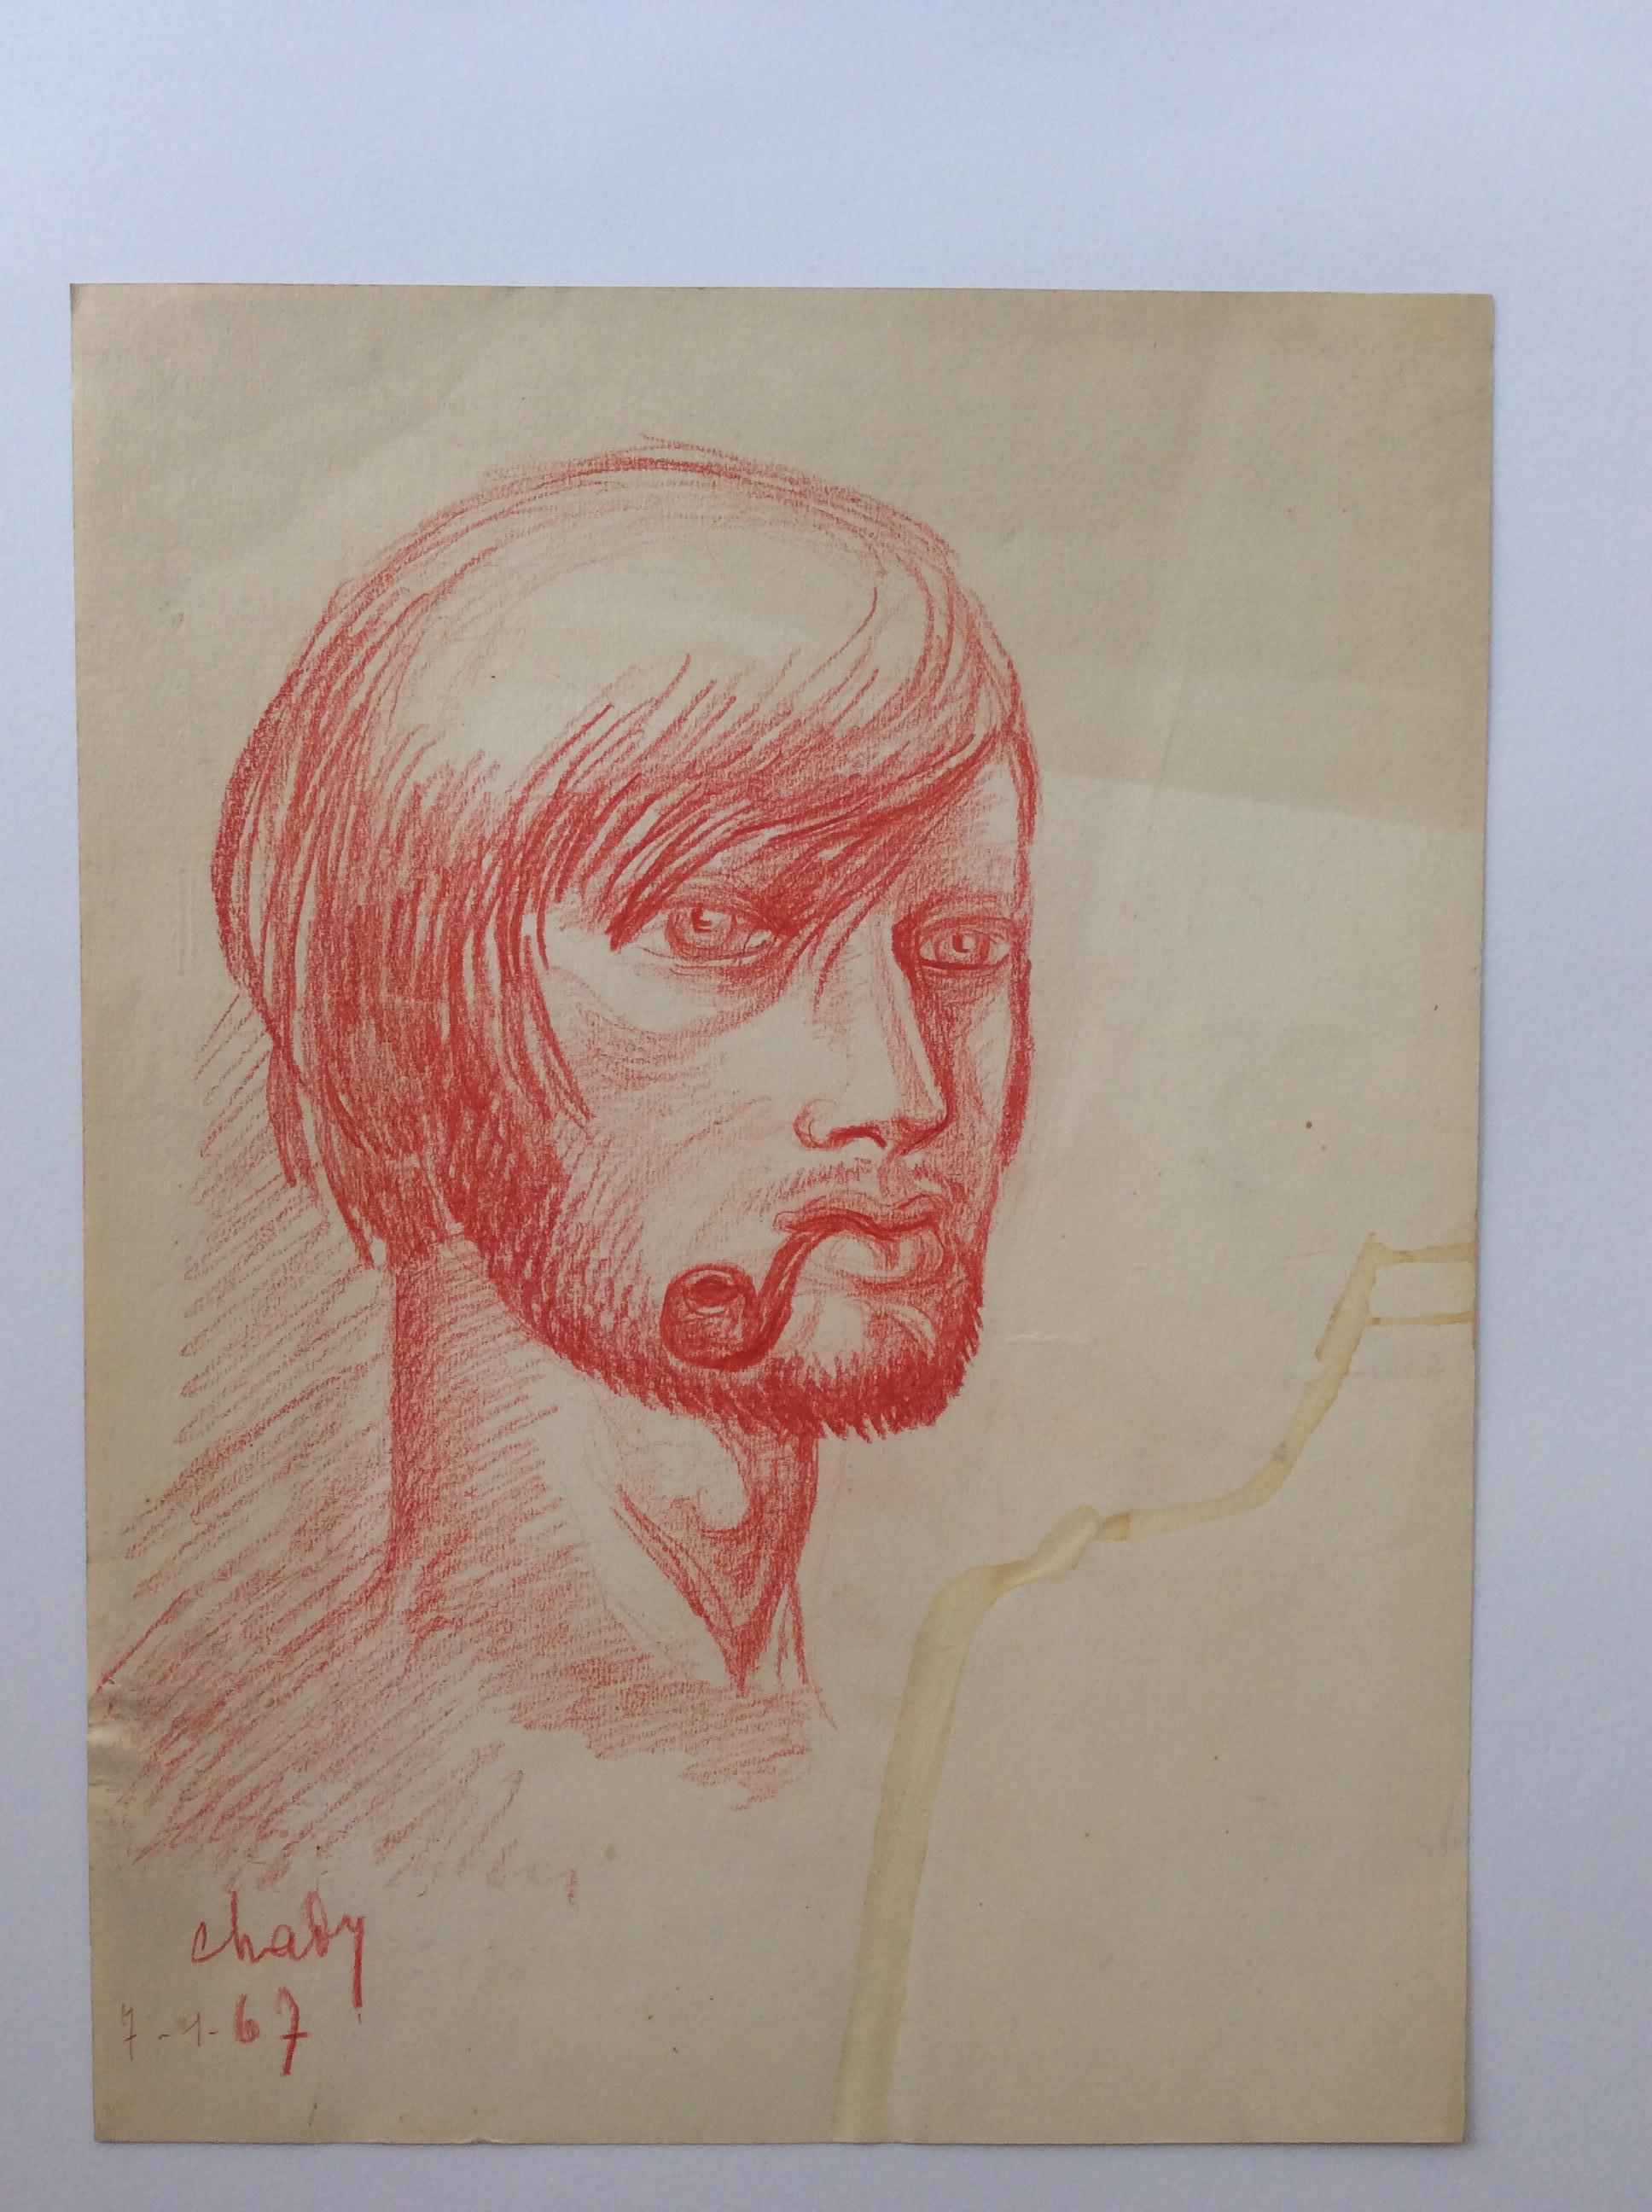 Très beau dessin-portrait original signé Chady, daté de 1967. 
Cette œuvre d'art intéressante ressemble à l'autoportrait de Vincent van Gogh. 

Mesures : Largeur 9.50 in x Hauteur 12.50 in.
 